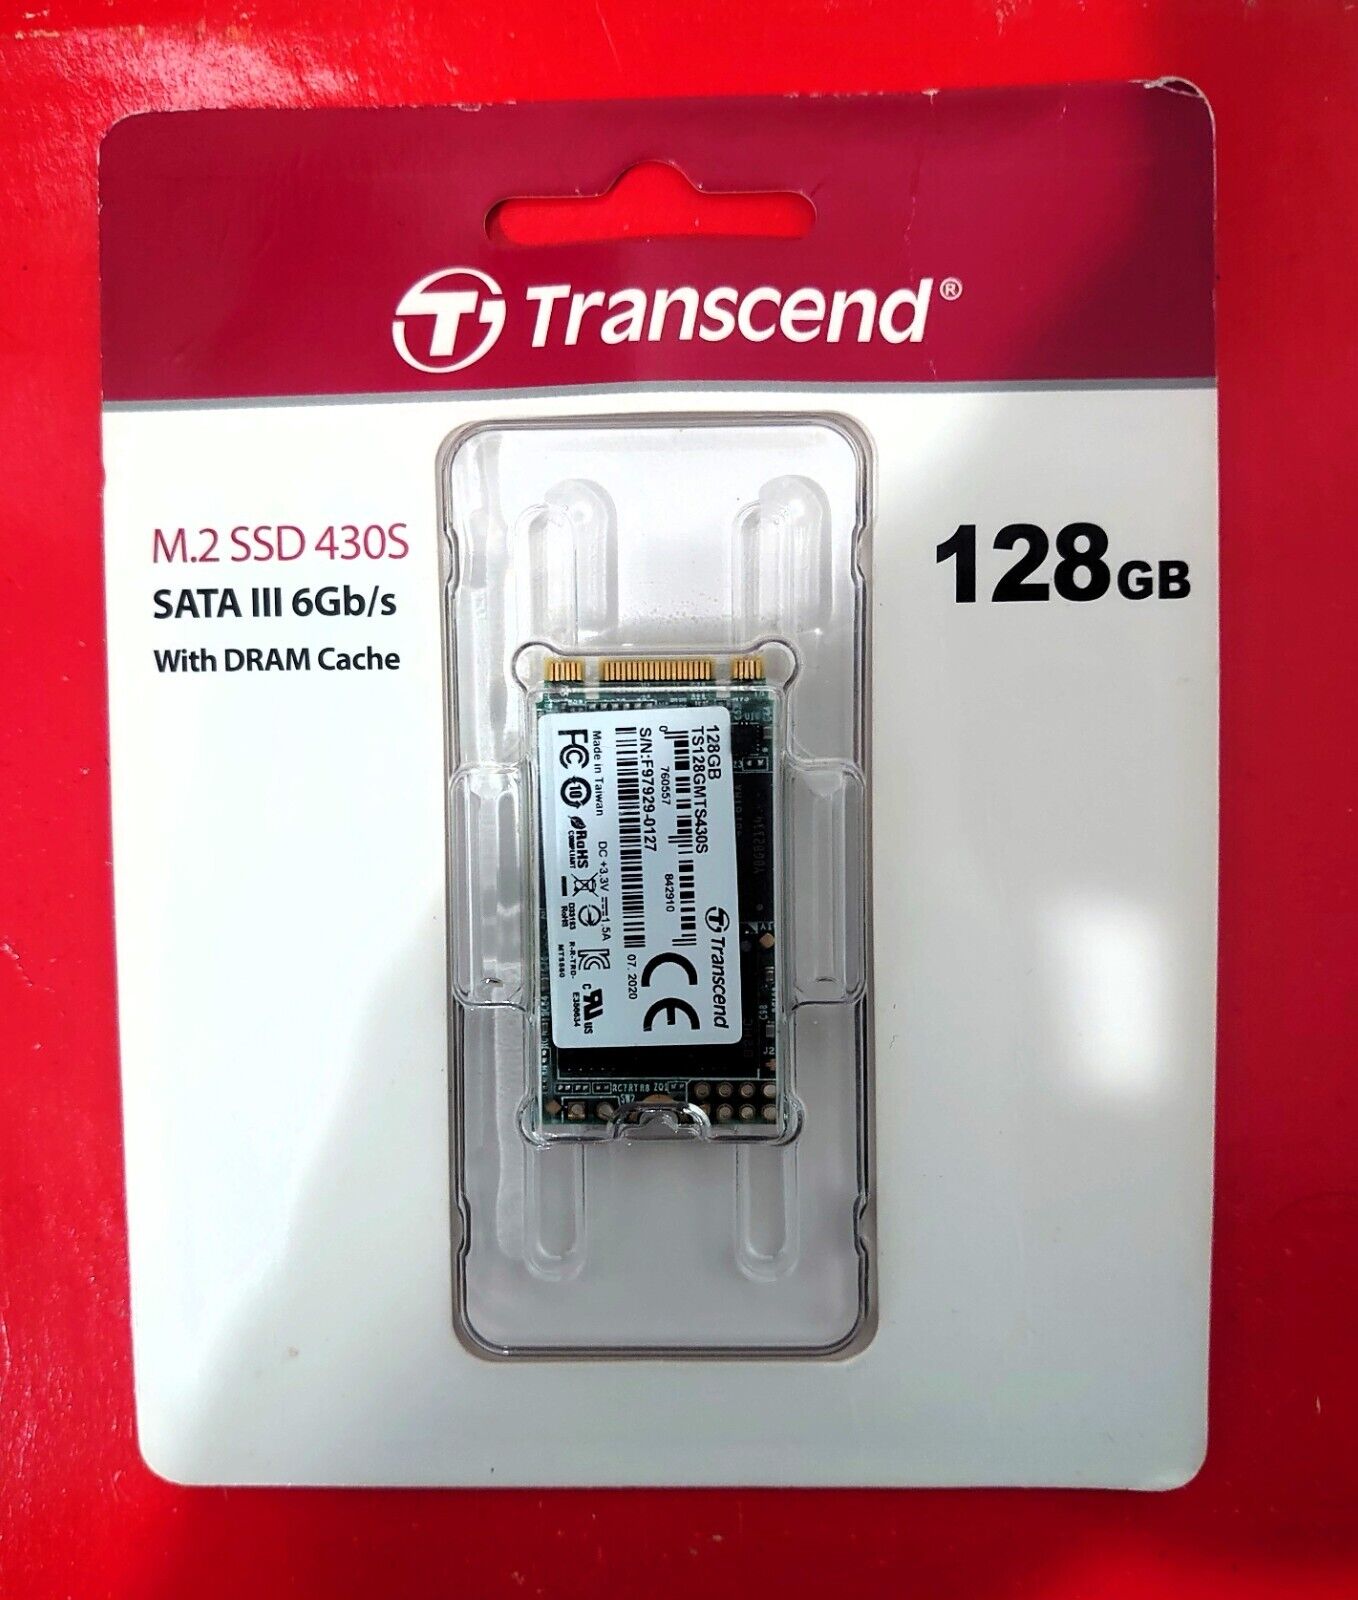 [NEW Transcend 128GB M.2 SSD TS128GMTS430S 2242 SATA III 6Gb/s 5yr Warranty]